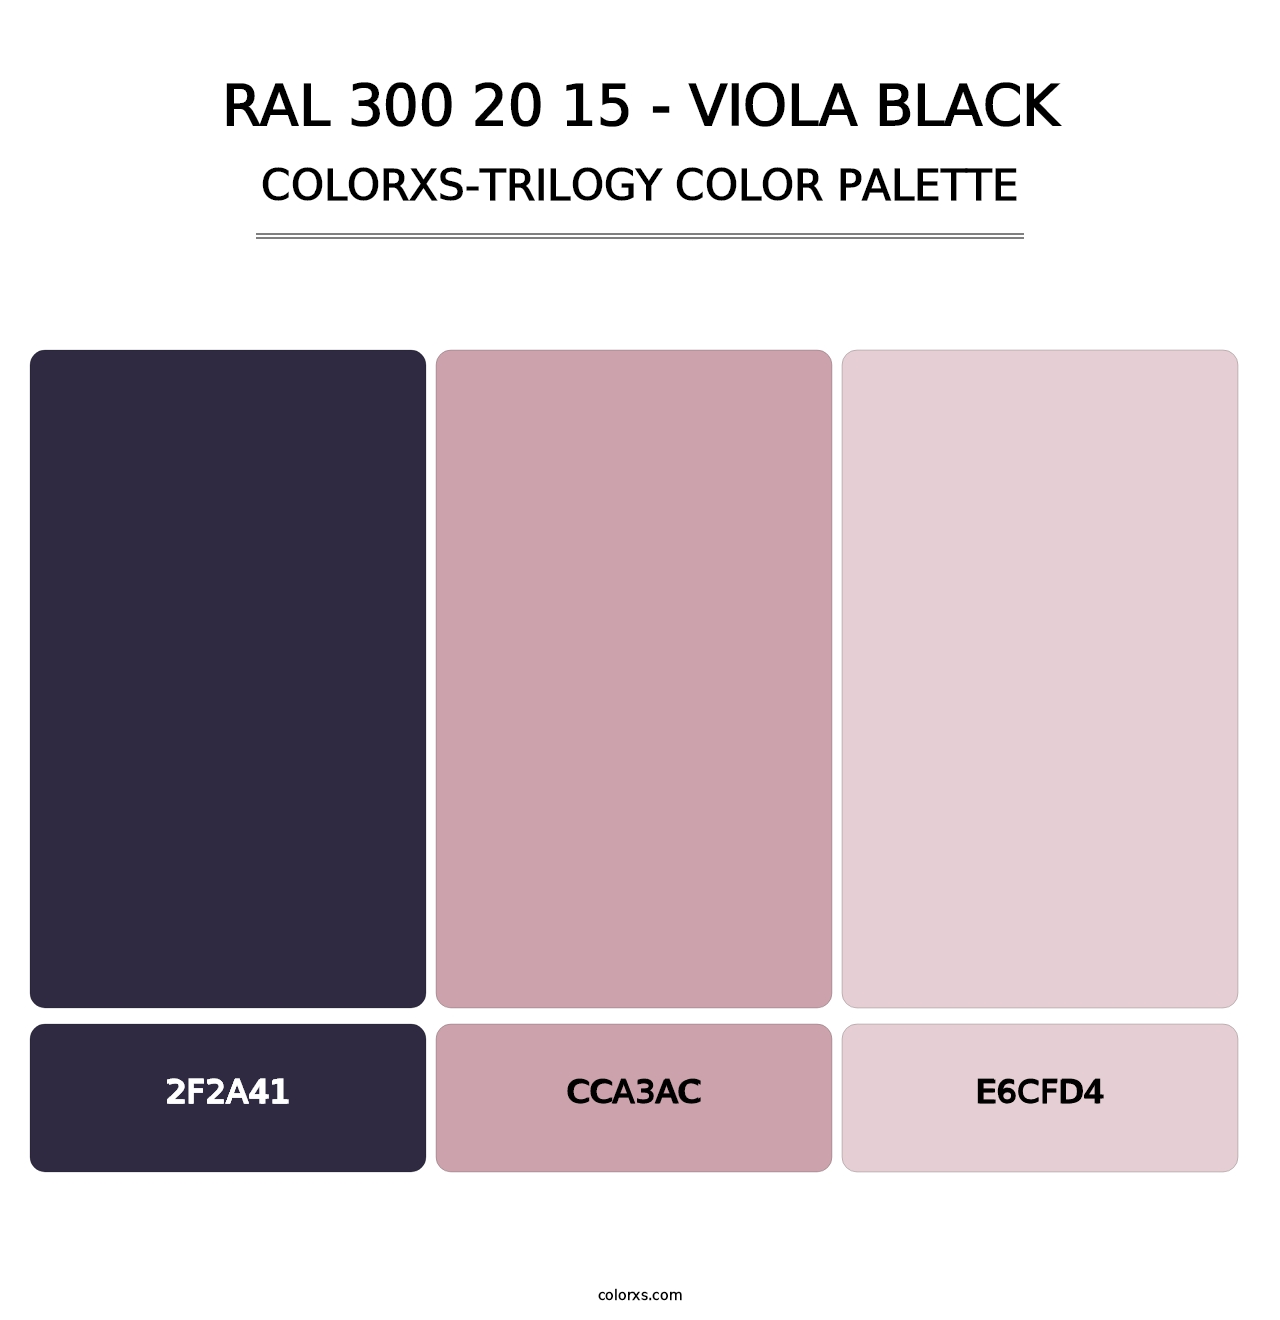 RAL 300 20 15 - Viola Black - Colorxs Trilogy Palette